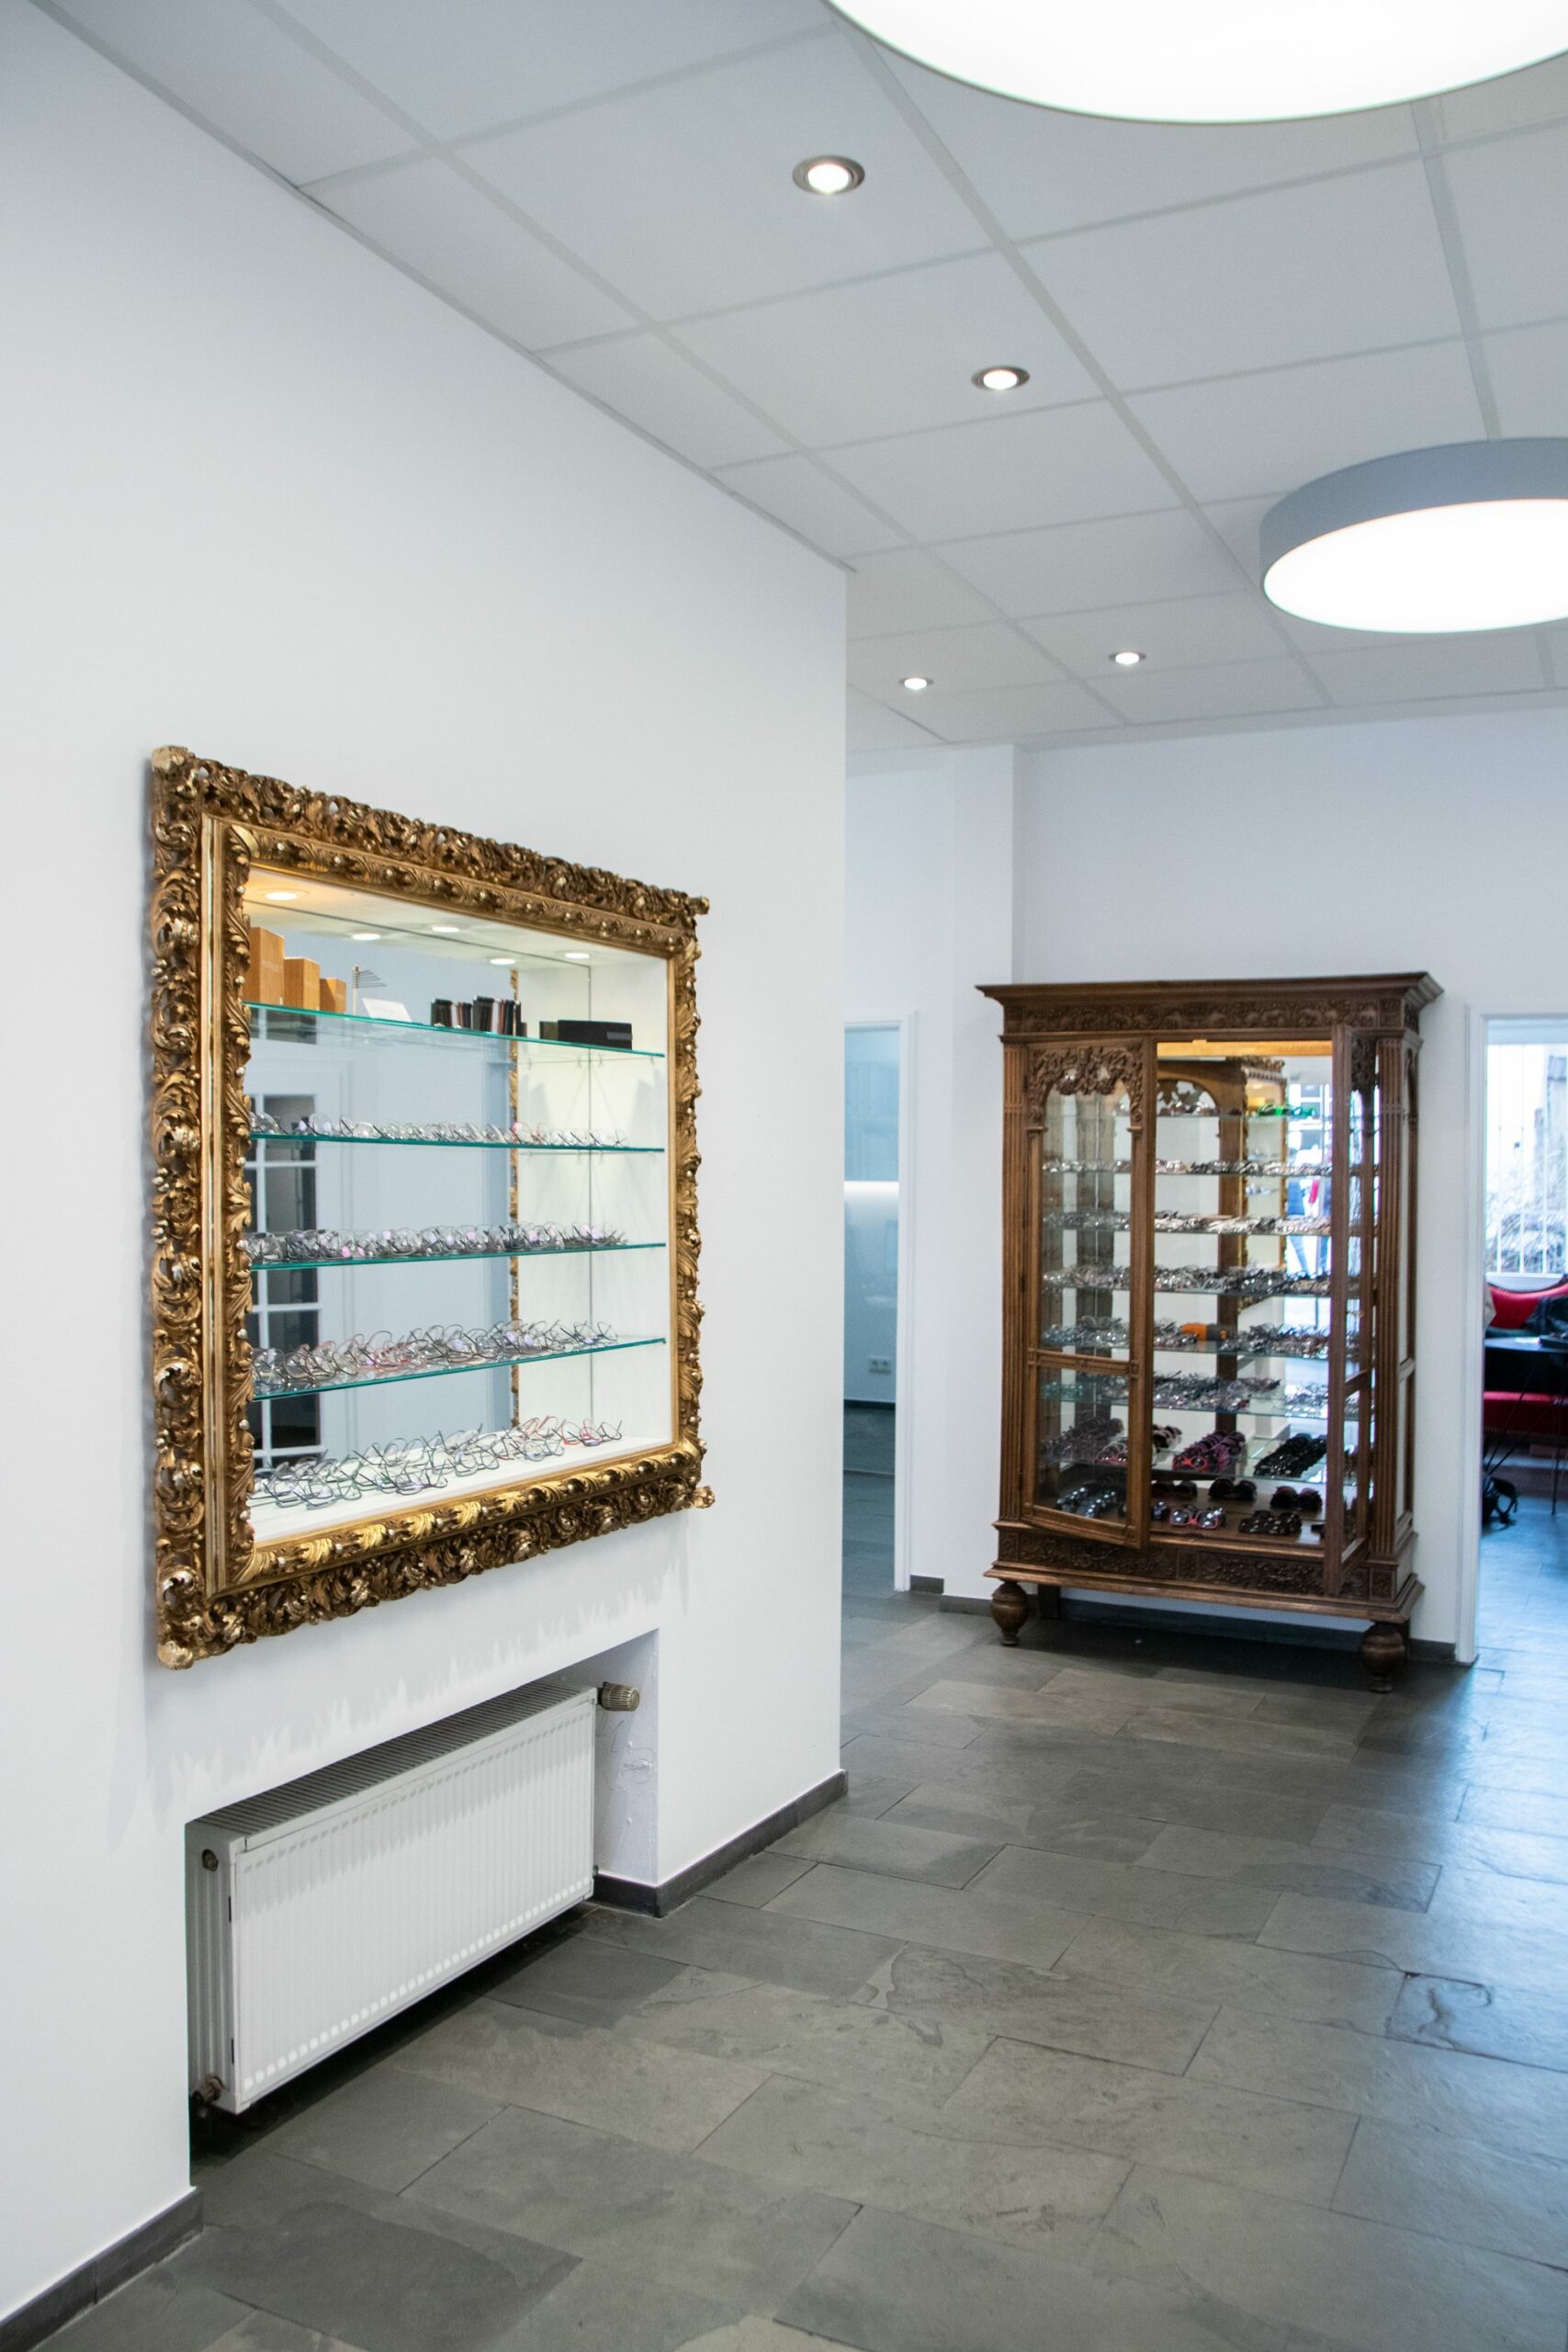 Das Bild zeigt den Verkaufsraum von die Brille Trier mit einem goldenen Spiegel an der Wand und einem Schrank im Hintergrund